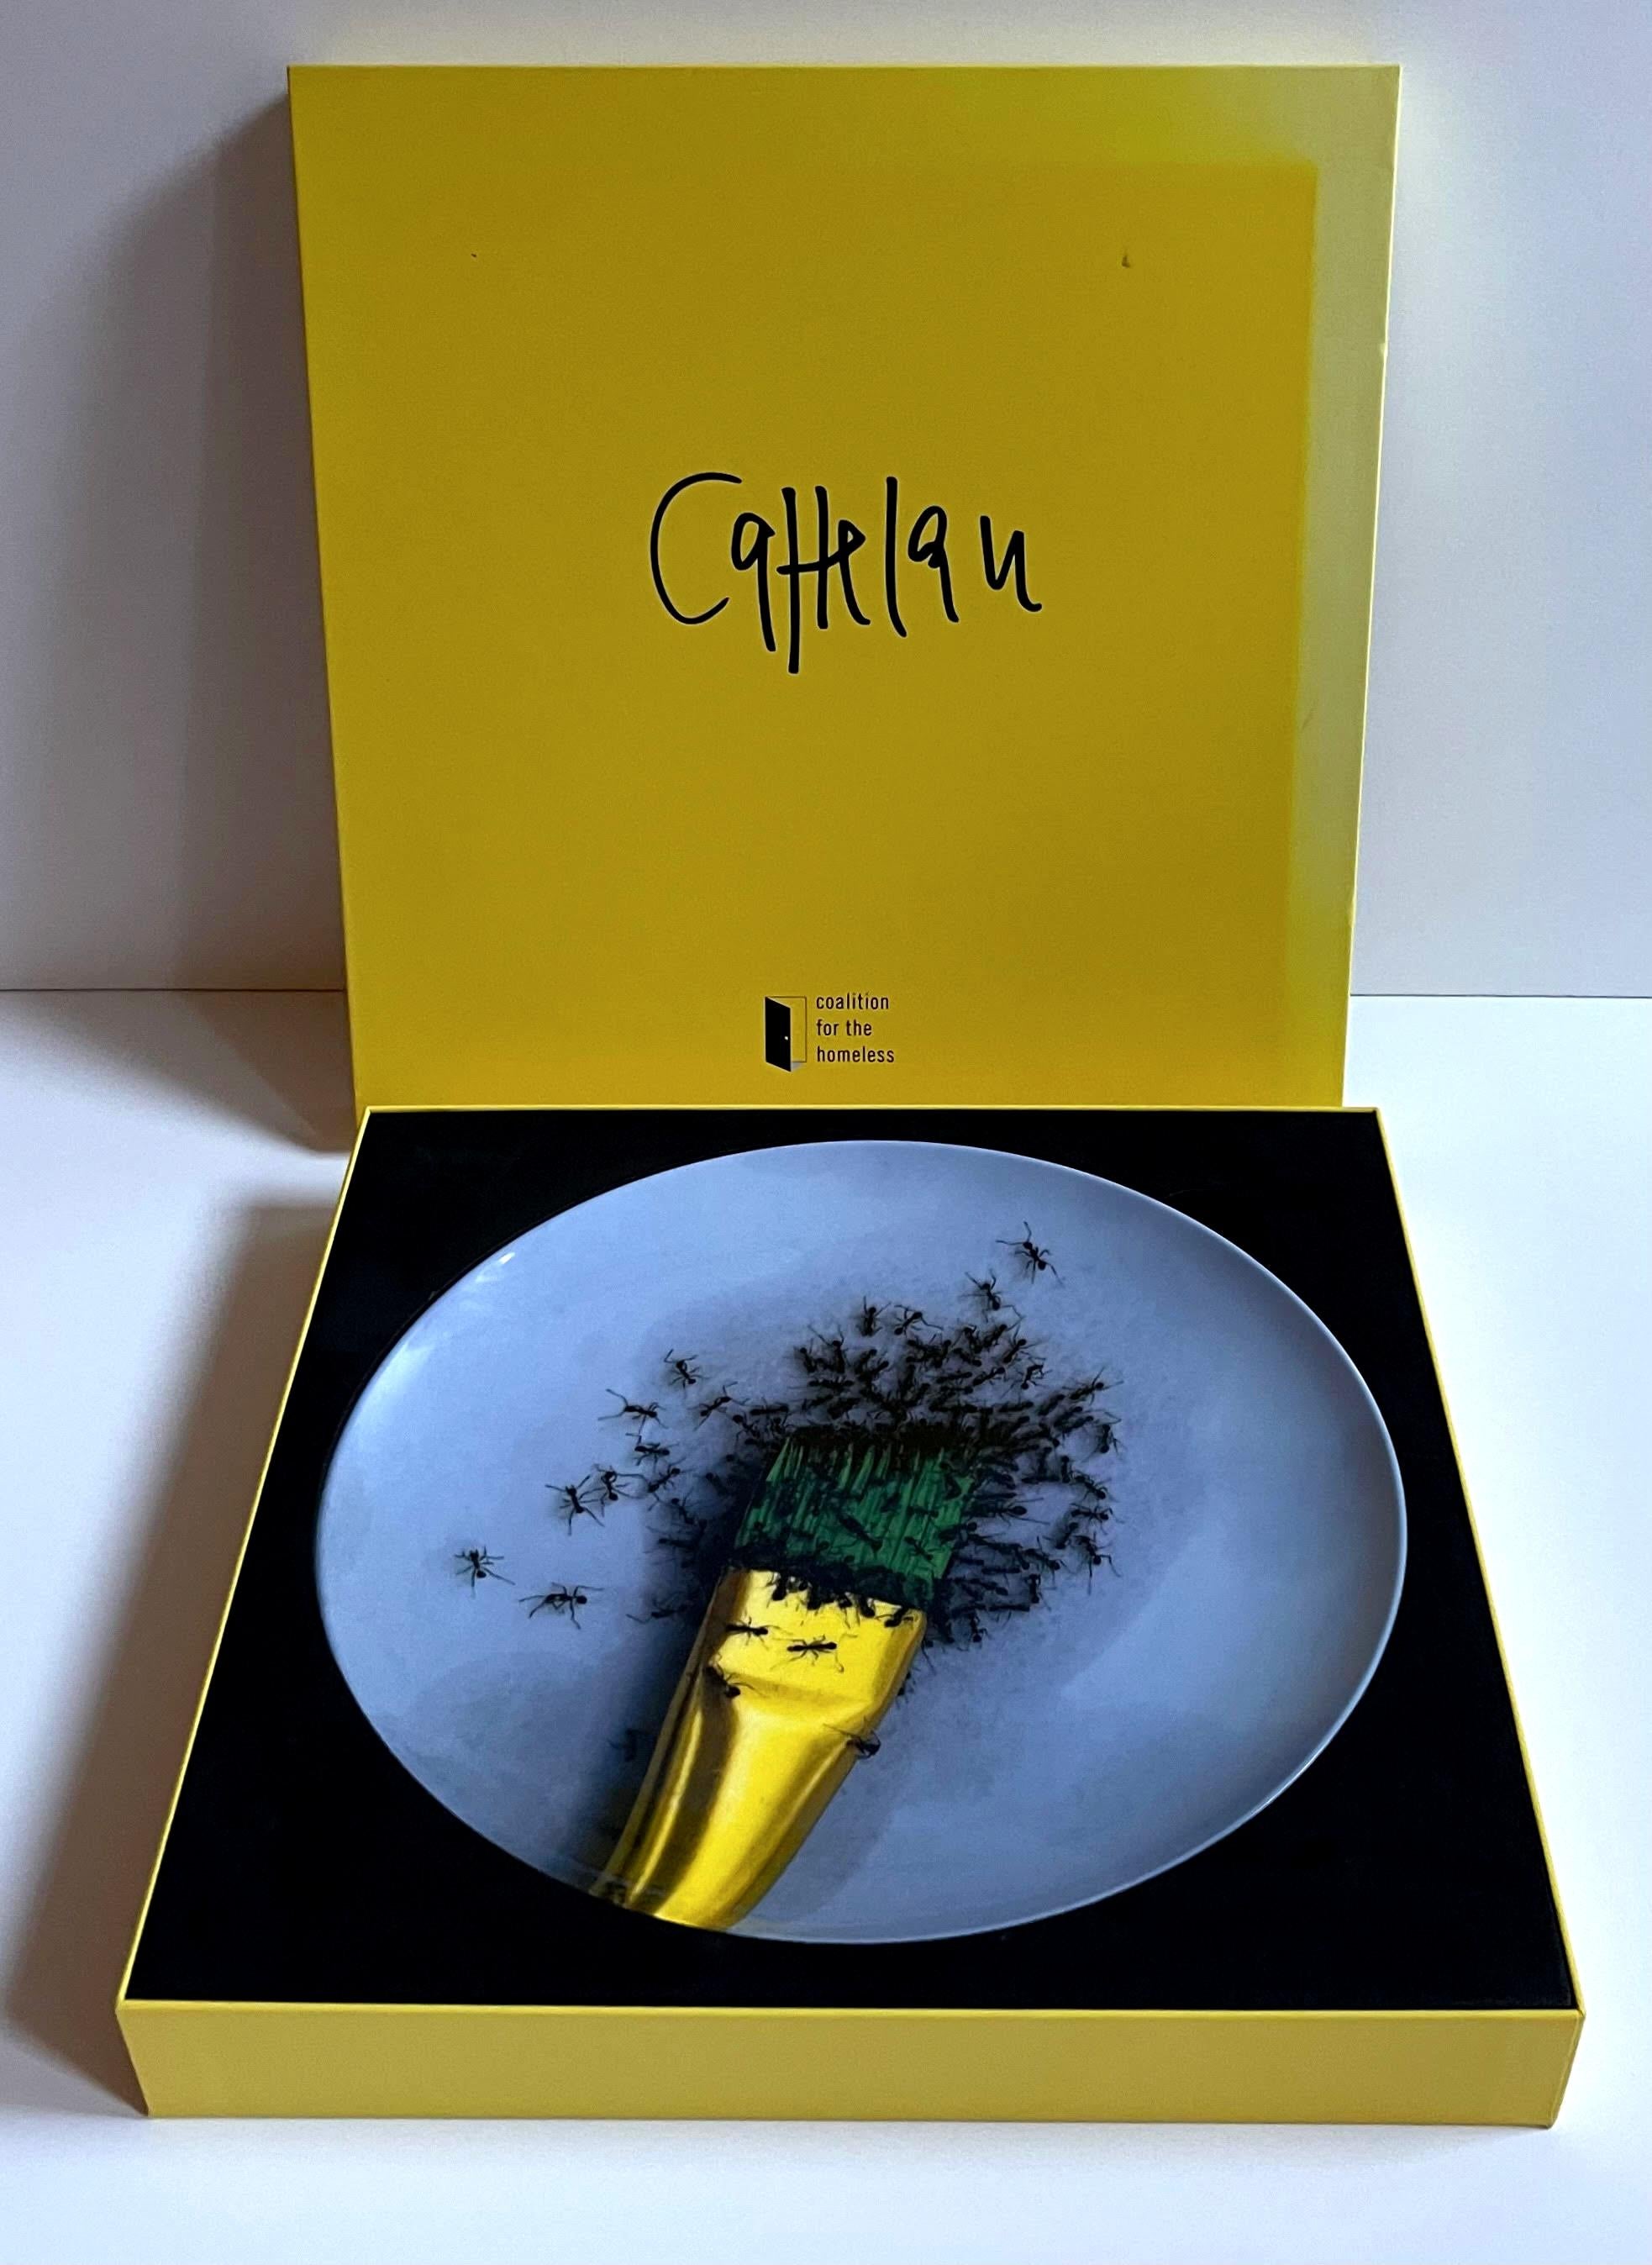 Porzellan-/Keramikteller ohne Titel in limitierter Auflage in maßgeschneiderter Geschenkbox (neu)  (Zeitgenössisch), Mixed Media Art, von Maurizio Cattelan